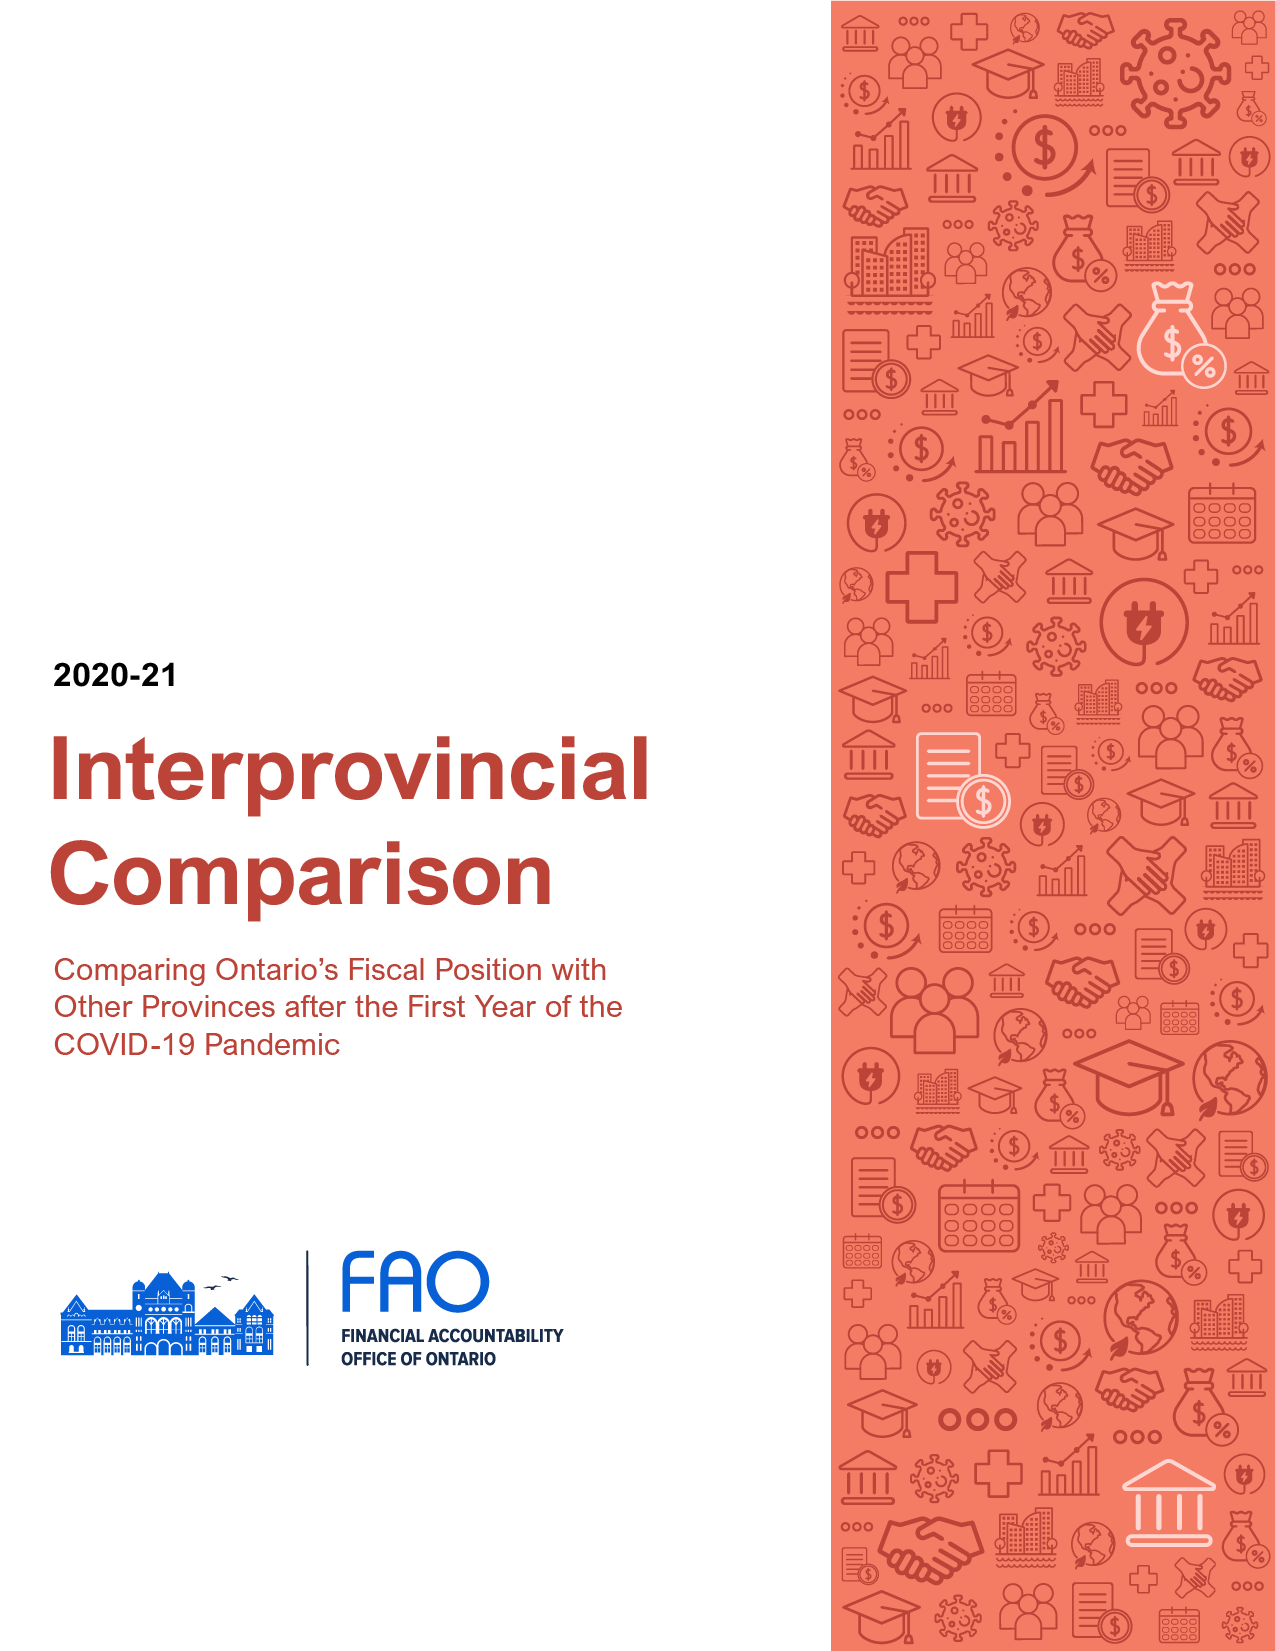 2020-21 Interprovincial Comparison report cover